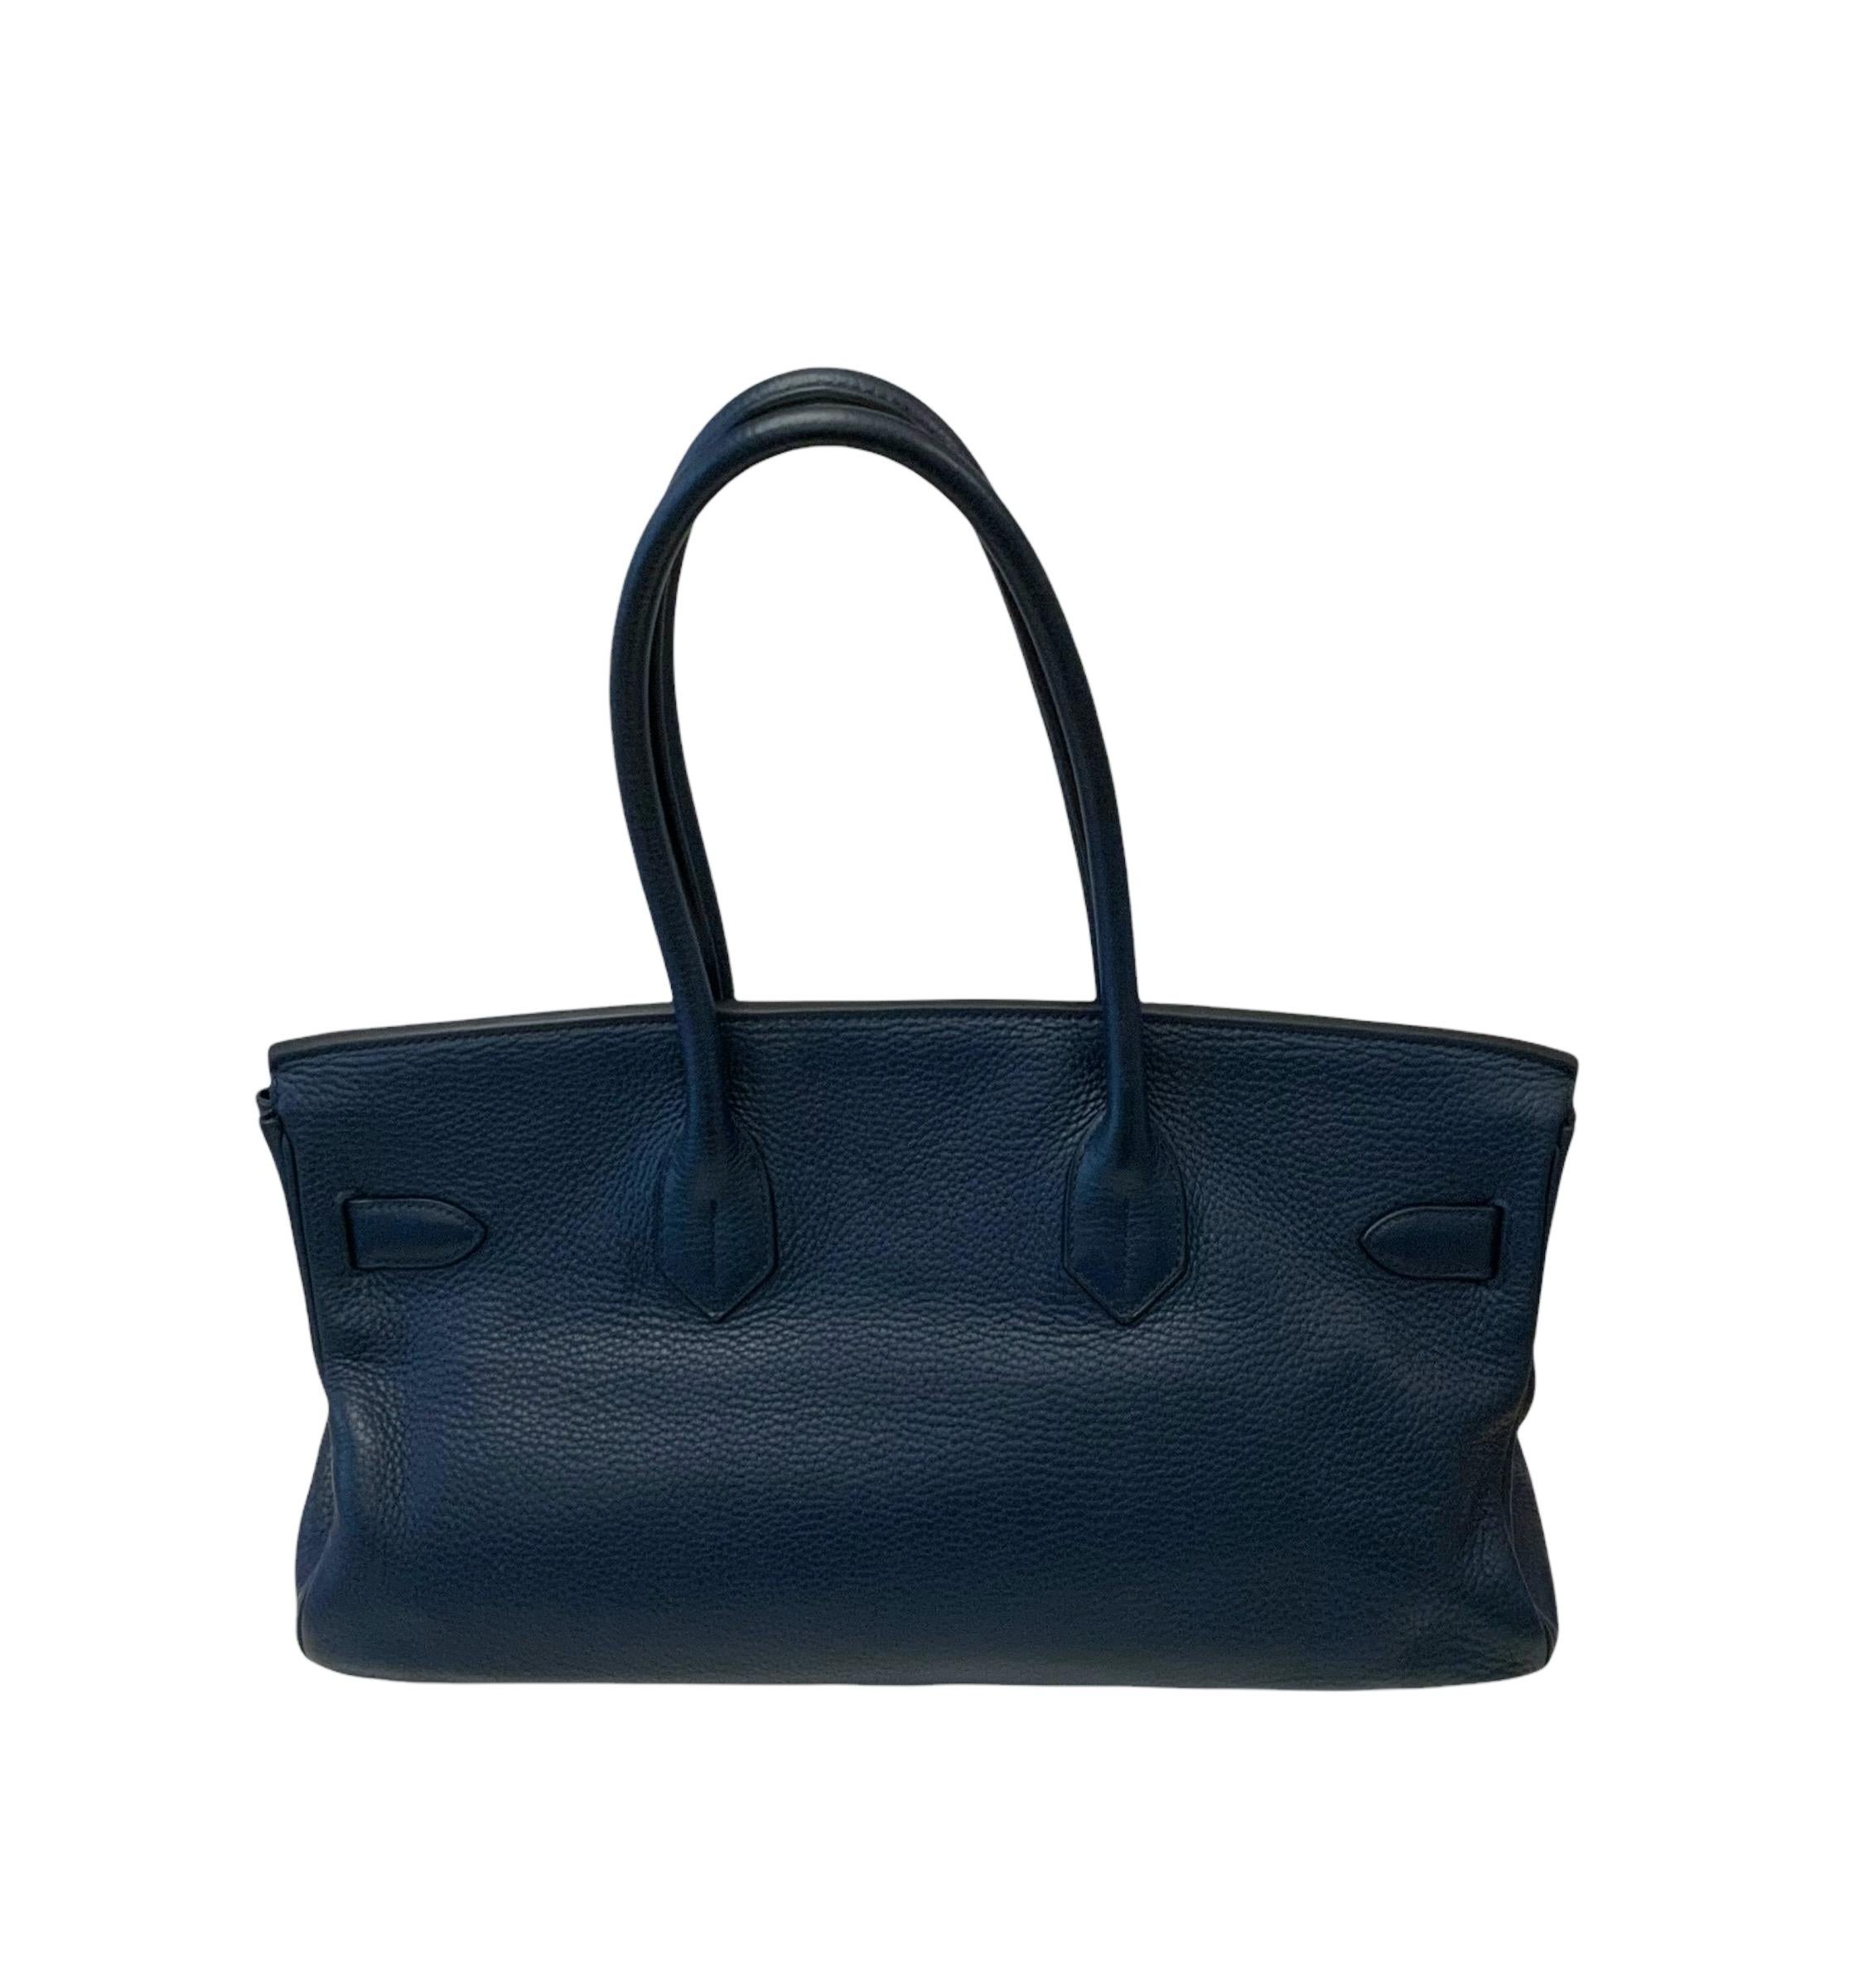 Ce sac à bandoulière Birkin a été baptisé d'après le cadeau que Jane Birkin a reçu de M. Dumas.
Il a été dessiné par Jean-Paul Gaultier, alors designer d'Hermès.

Il est confectionné dans un magnifique cuir Clémence de couleur bleue et sa